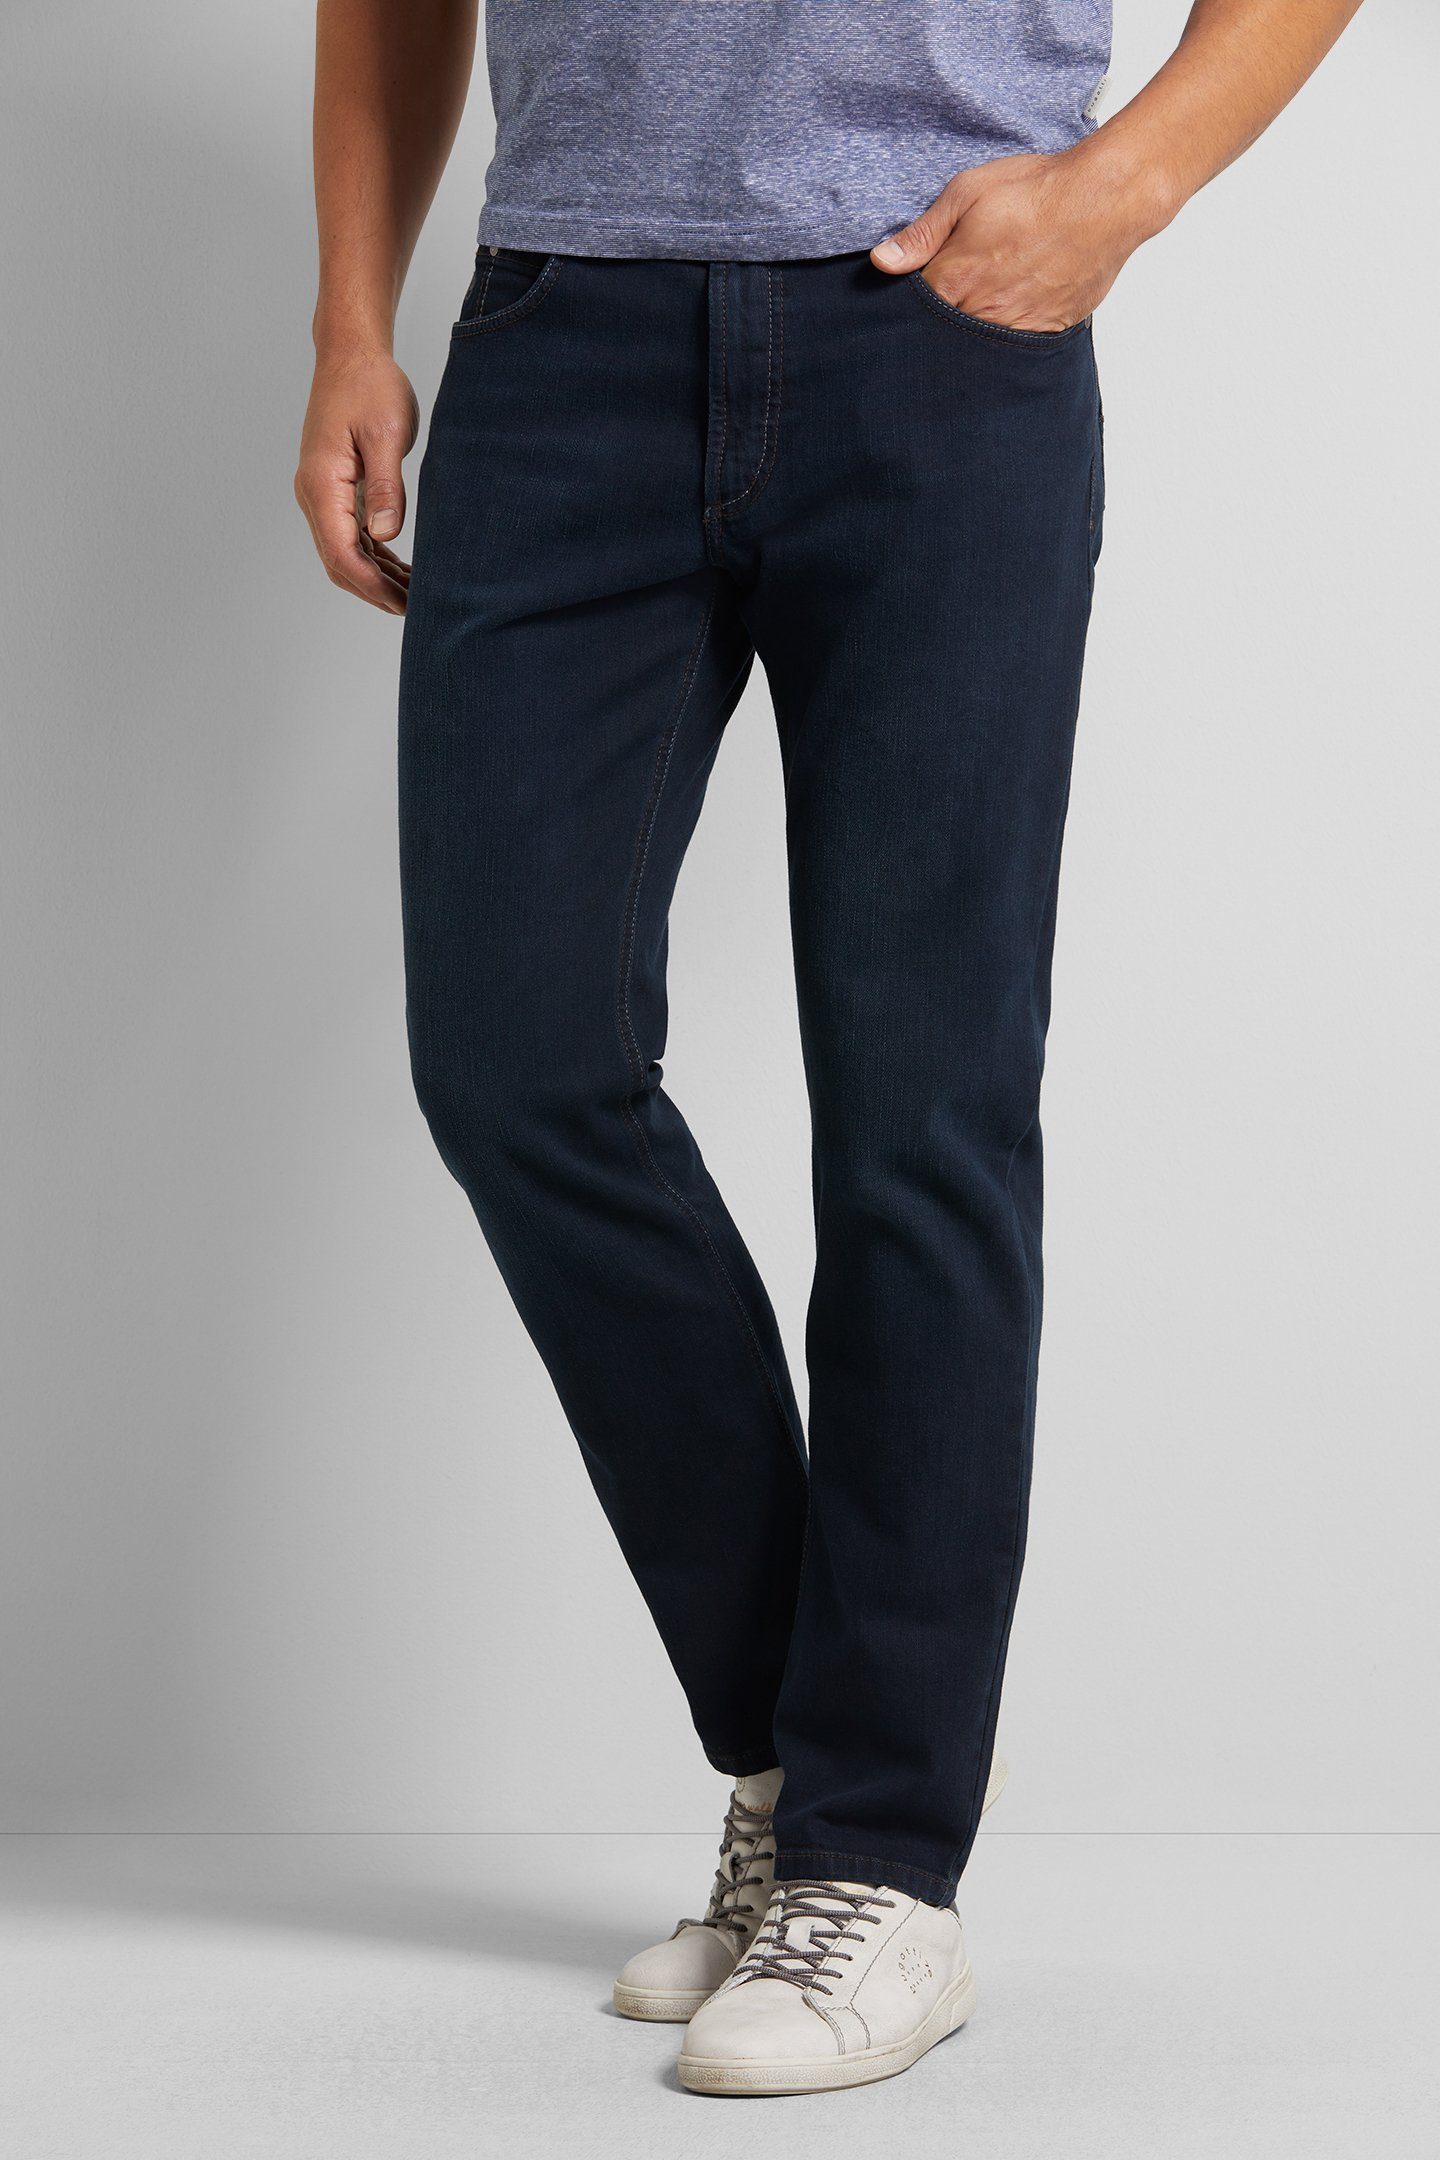 blau-schwarz Stretch Comfort bugatti 5-Pocket-Jeans mit